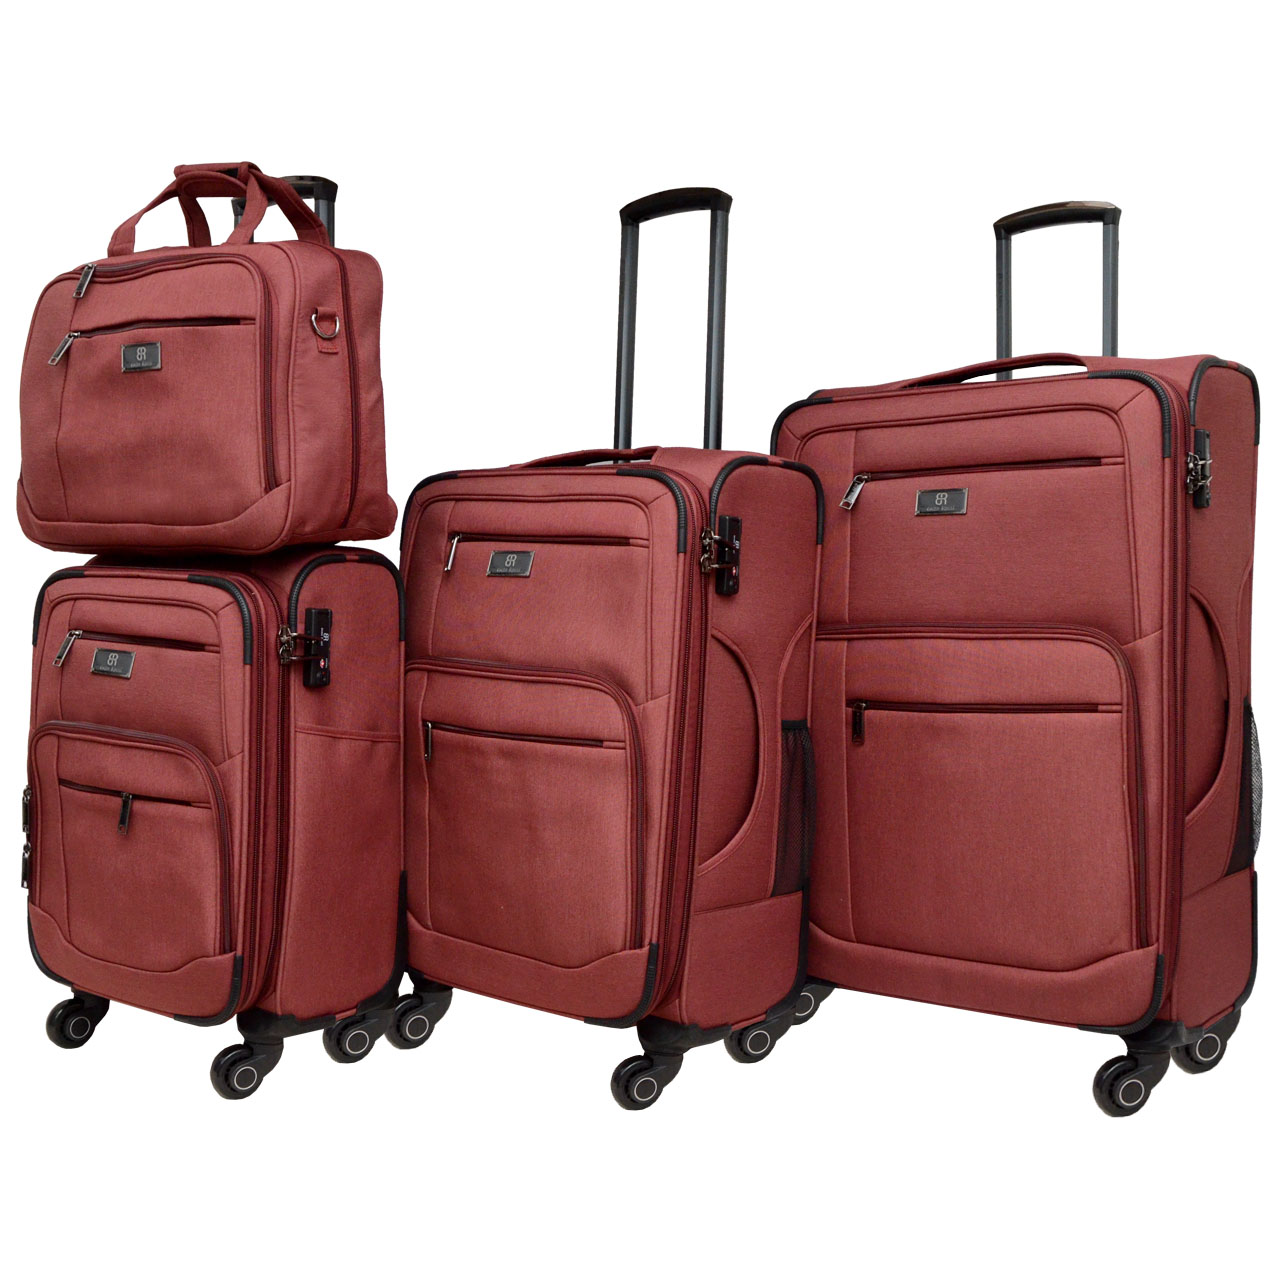 مجموعه چهار عددی چمدان انزو رسی مدل ER 1693